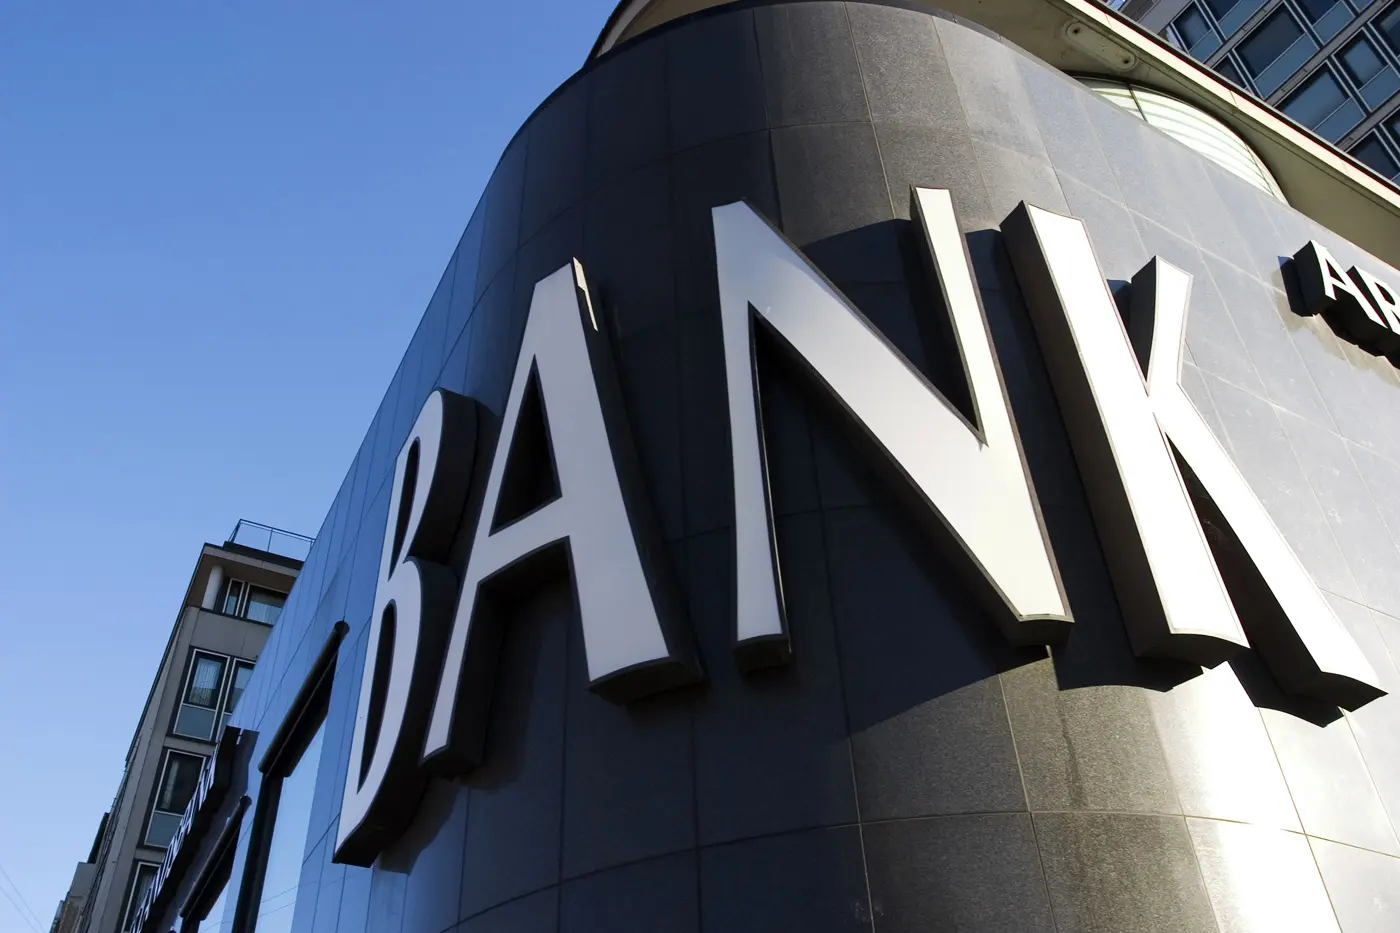 میانبر بانکی ایران به اروپا